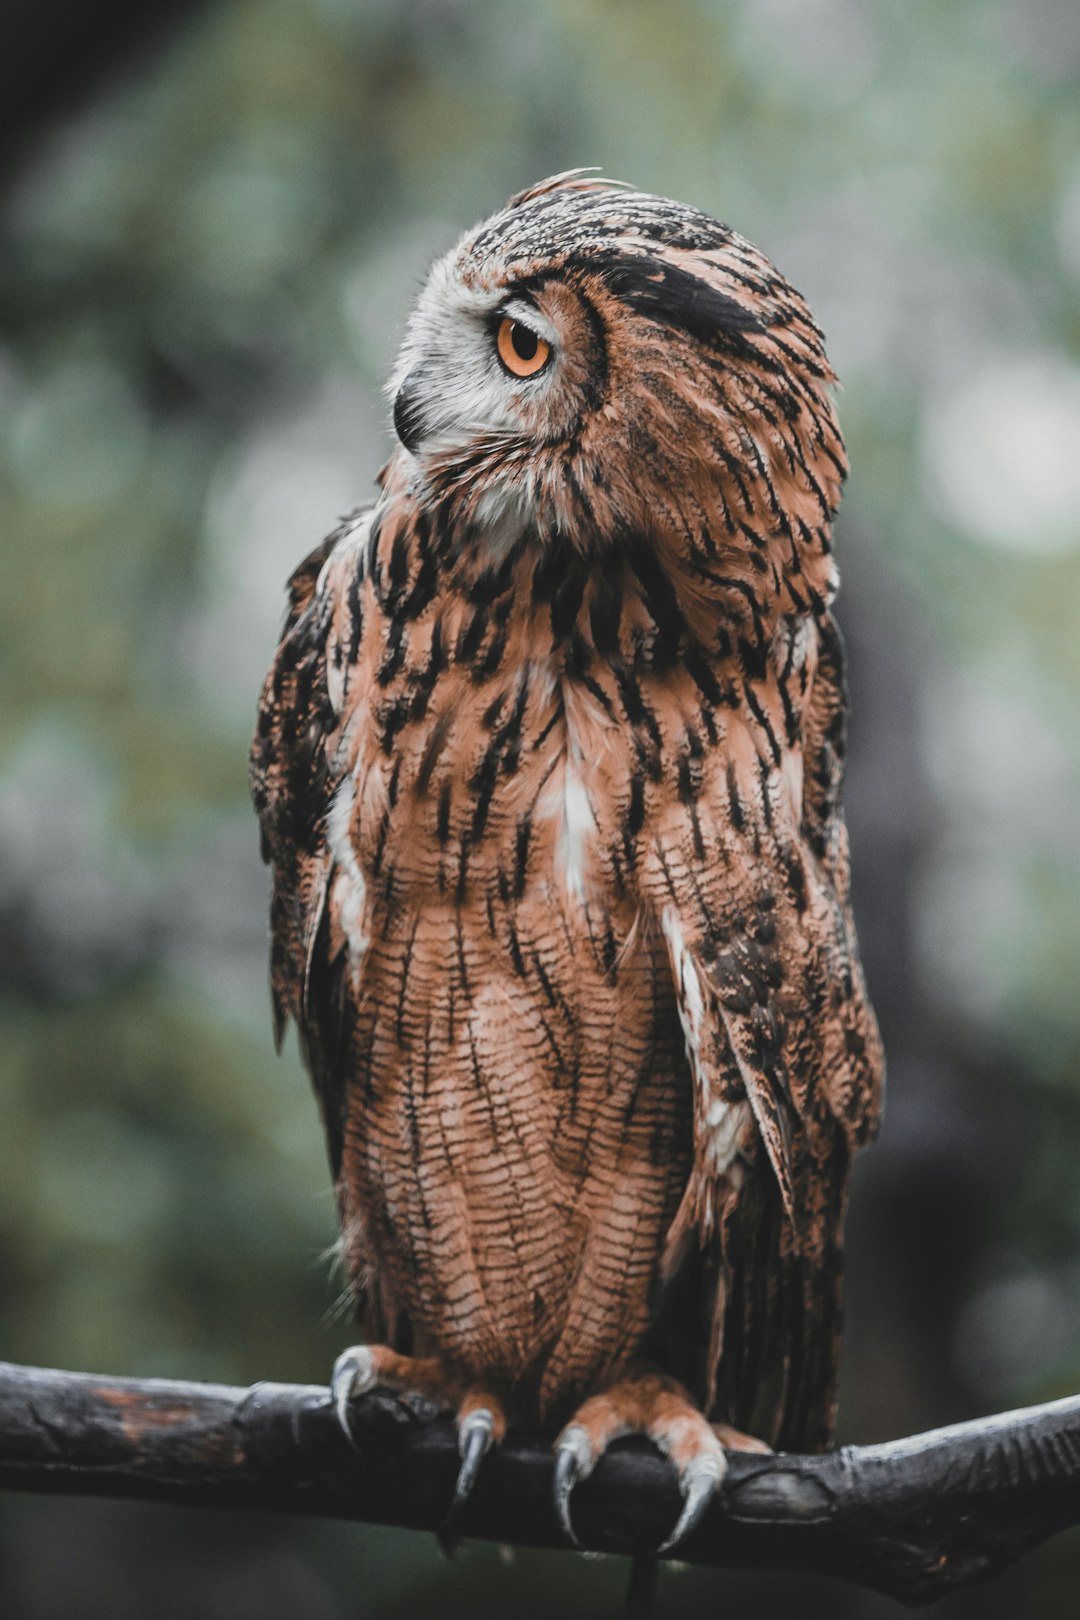 brown and white owl in tilt shift lens